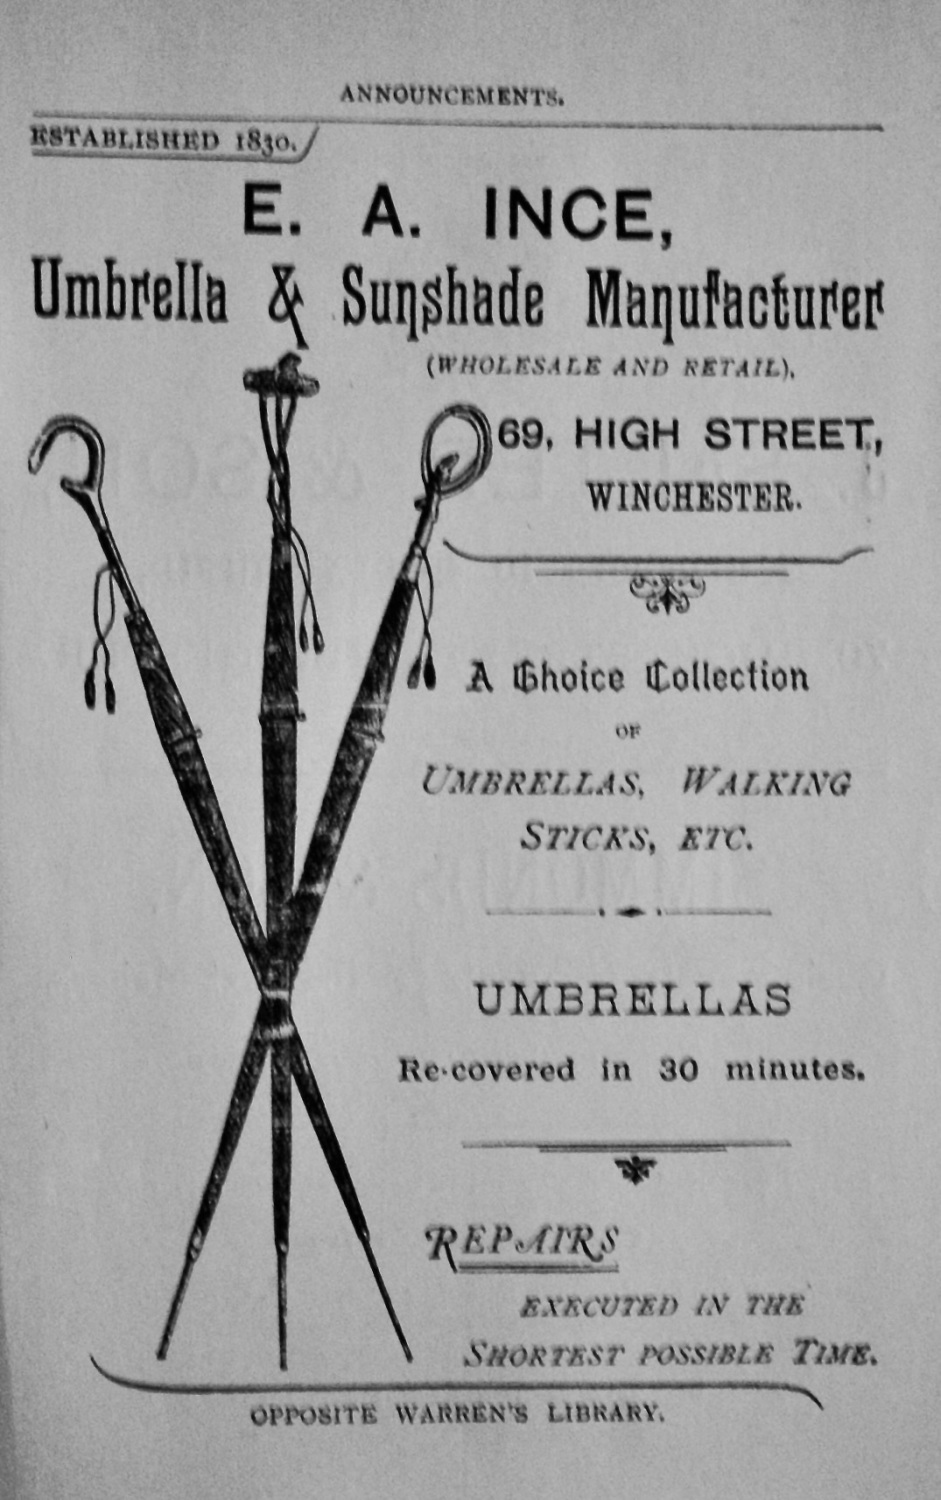 E. A. Ince, Umbrella & Sunshade Manufacturer, 69, High Street, Winchester. 